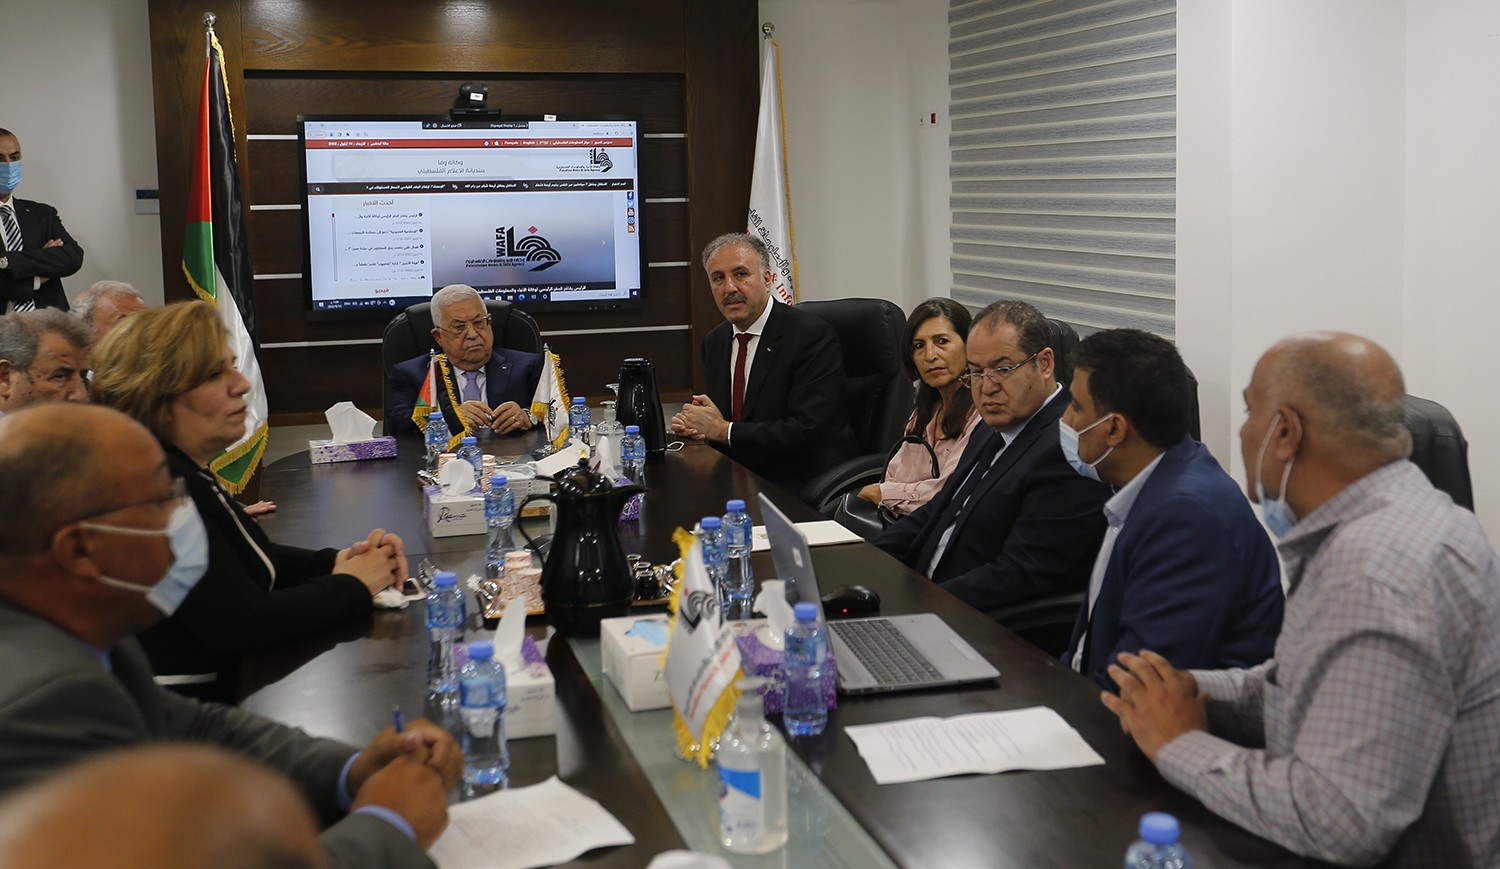 رام الله - الرئيس محمود عباس، يفتتح المقر المؤقت لوكالة الانباء والمعلومات الفلسطينية - وفا 1.jpg